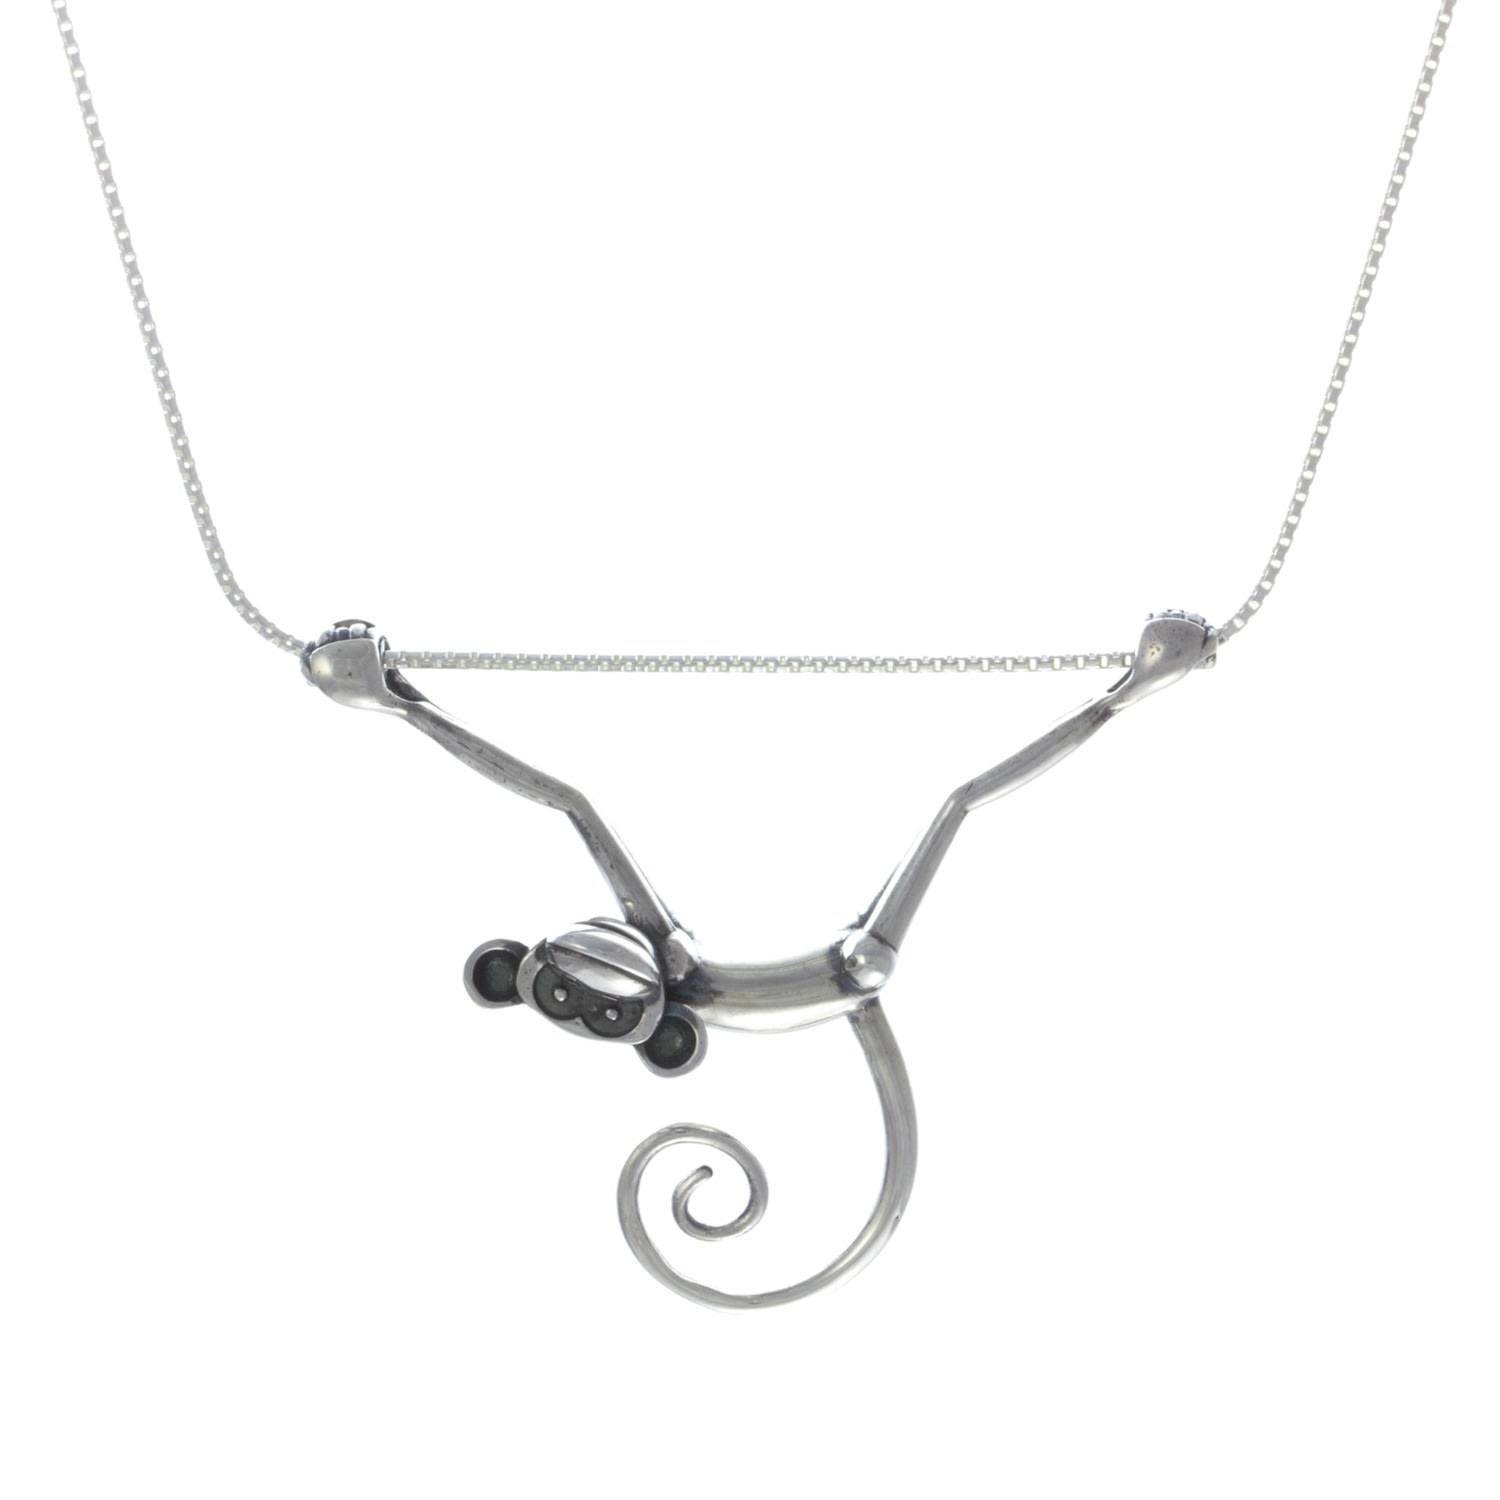 Lee Renee Women's Black / Grey / Silver Toy Monkey Necklace - Silver In Gray